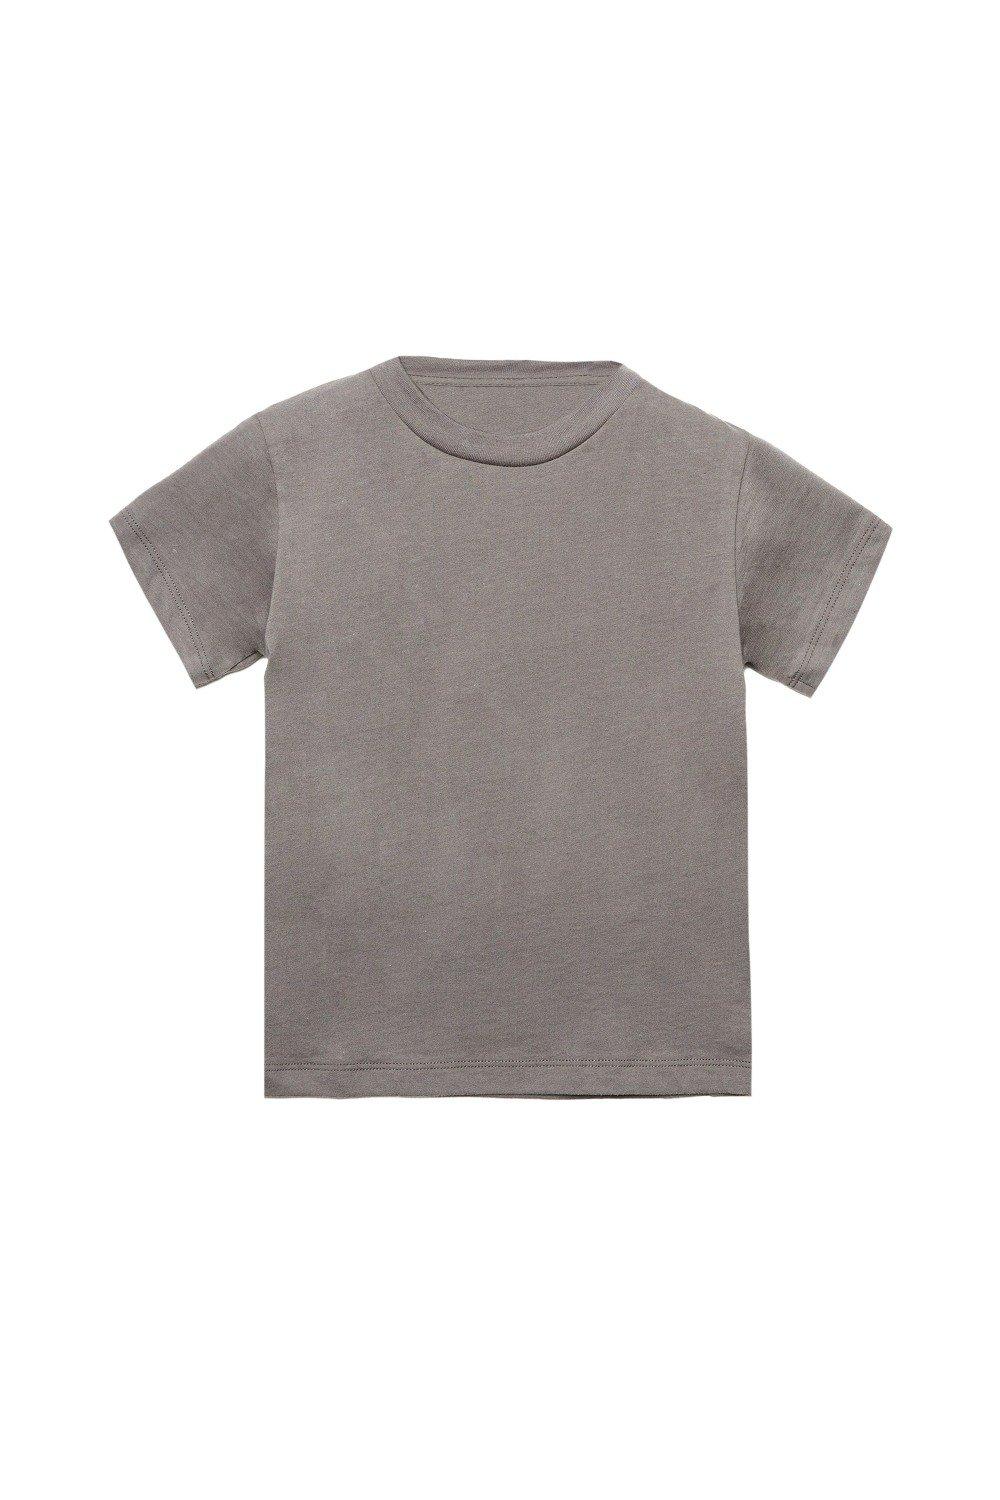 Jersey Short Sleeve T-Shirt (Pack of 2)